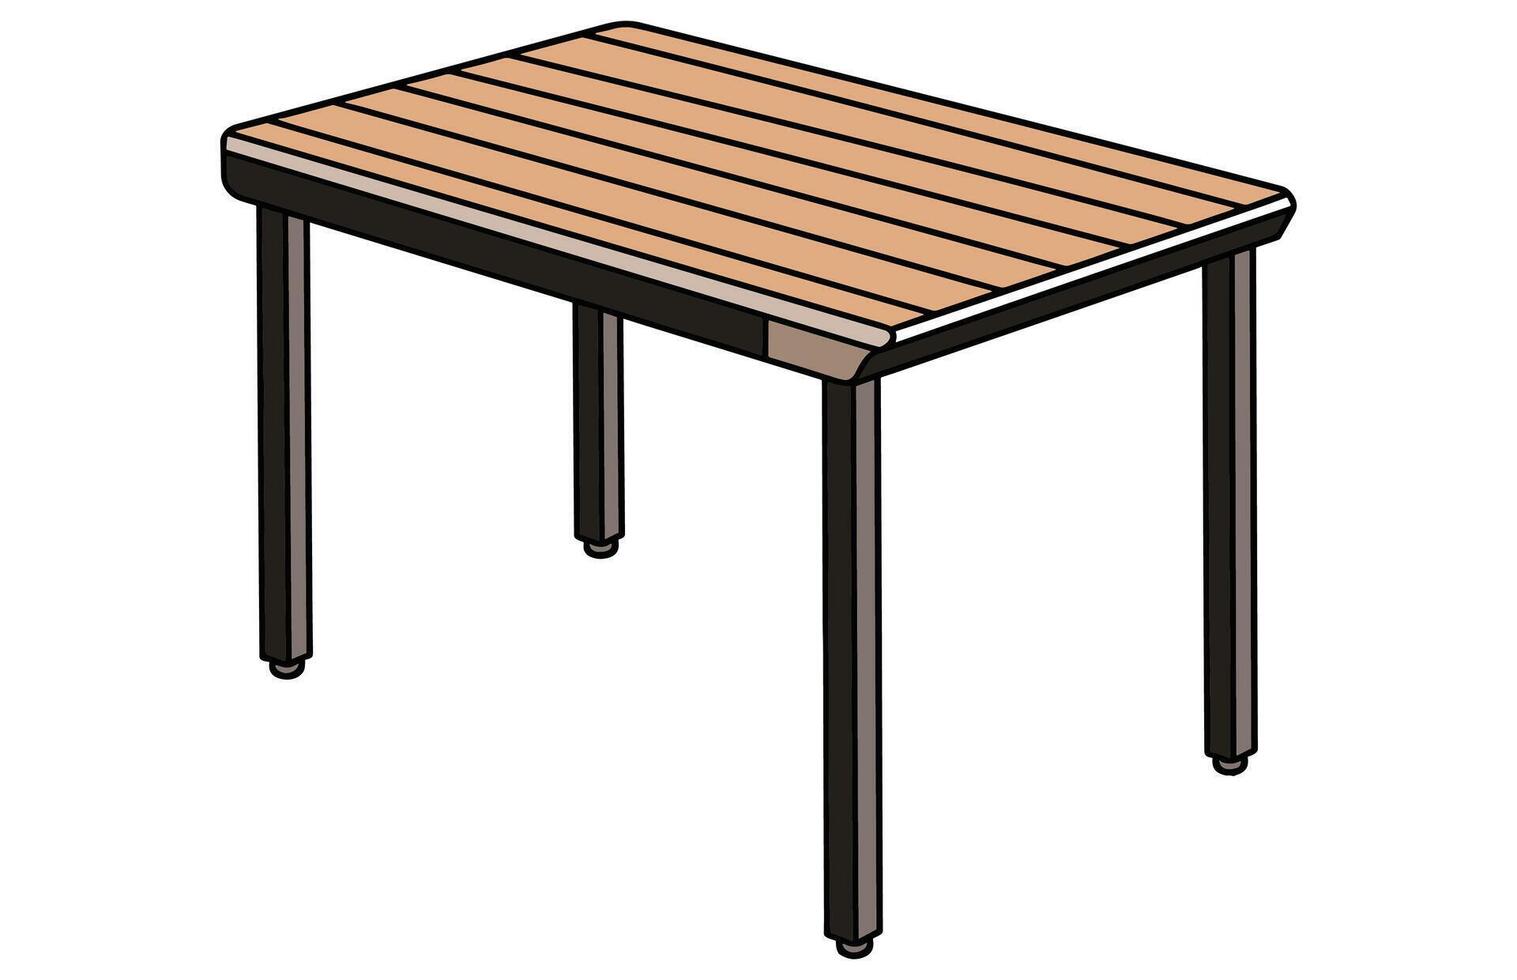 Terrasse Bereich Cafe und Garten Möbel Tabelle Vektor, Terrasse Schreibtisch Illustration vektor